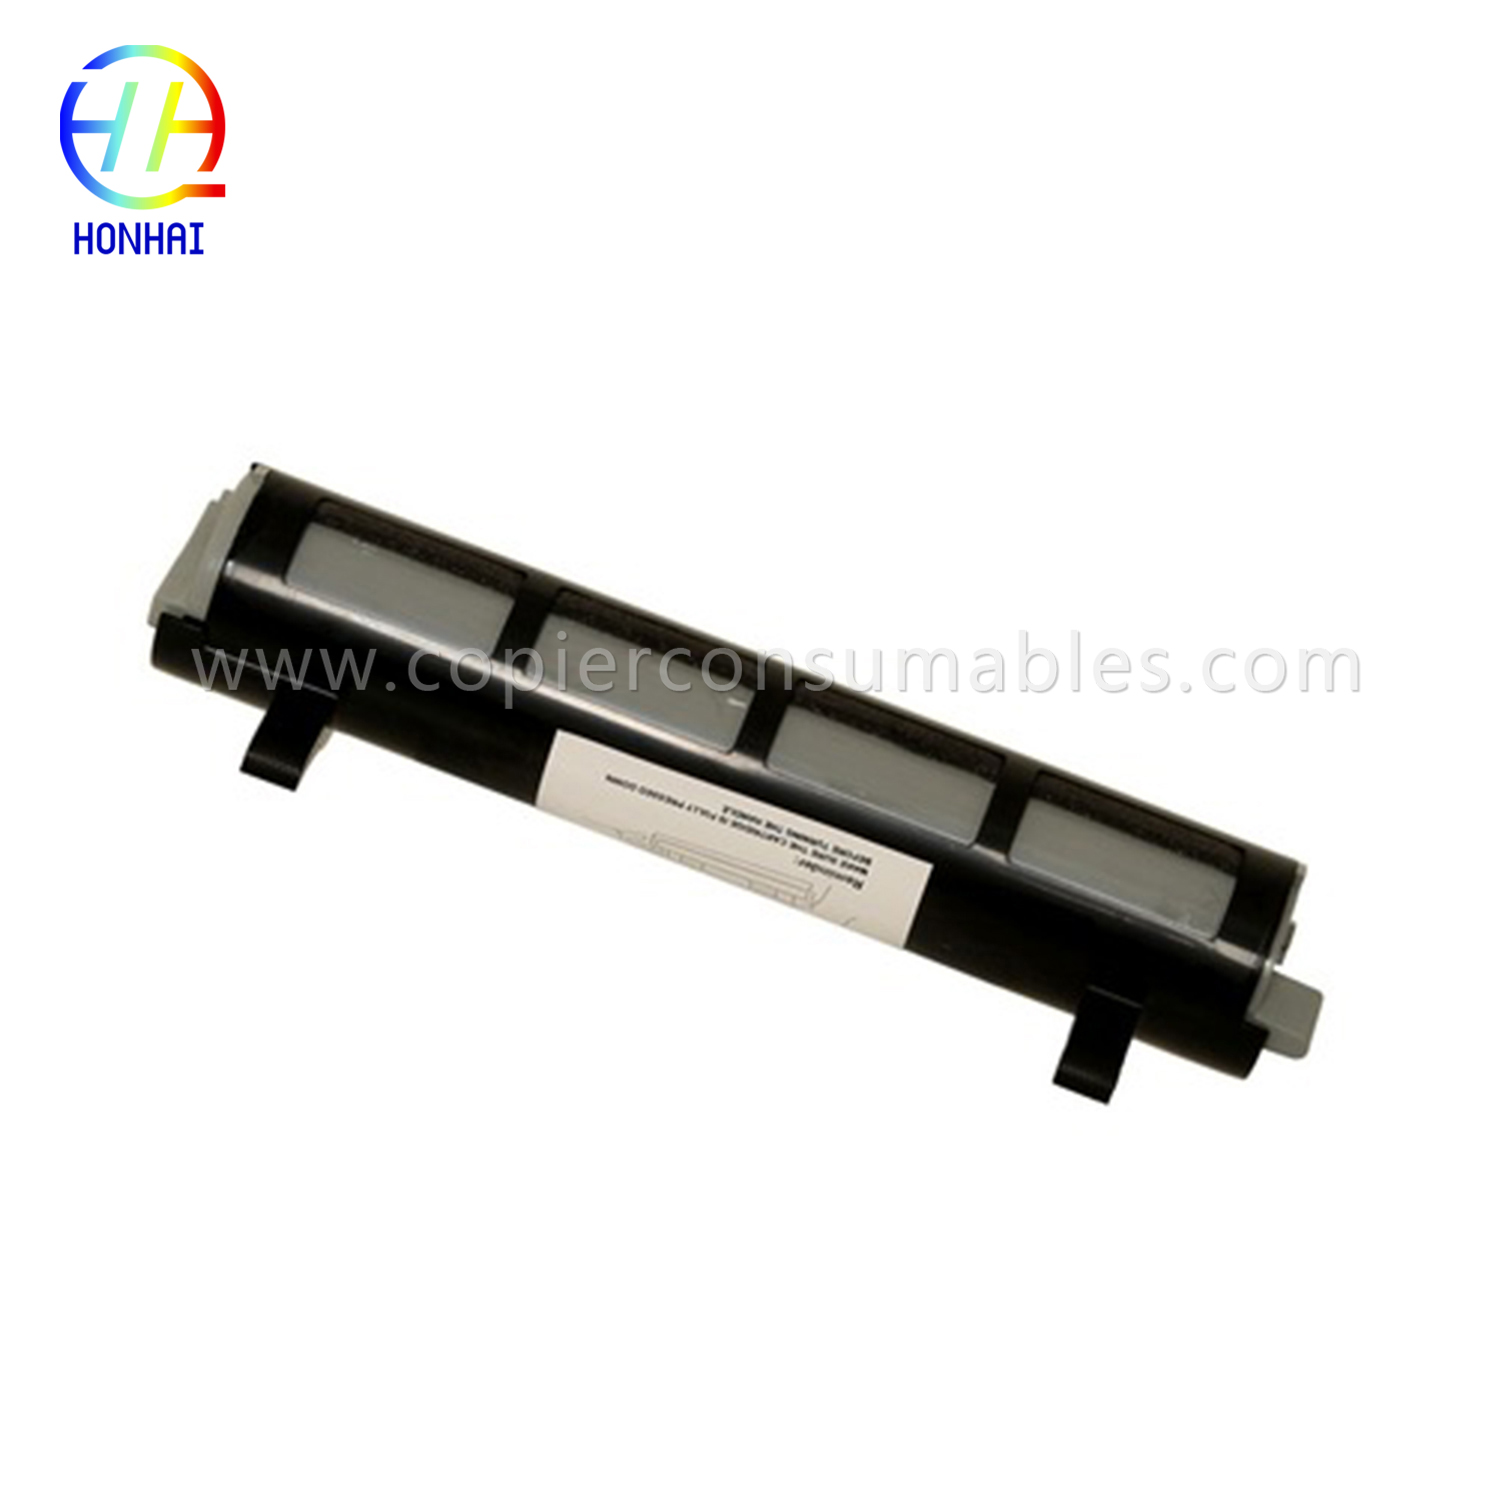 I-Black Toner Cartridge ye-Panasonic Kx-FL511 Kx-Fa83 Kx-FL541 Kx-FL611 Kx-Flm651 Kx-Flm661 Kx-Flm671